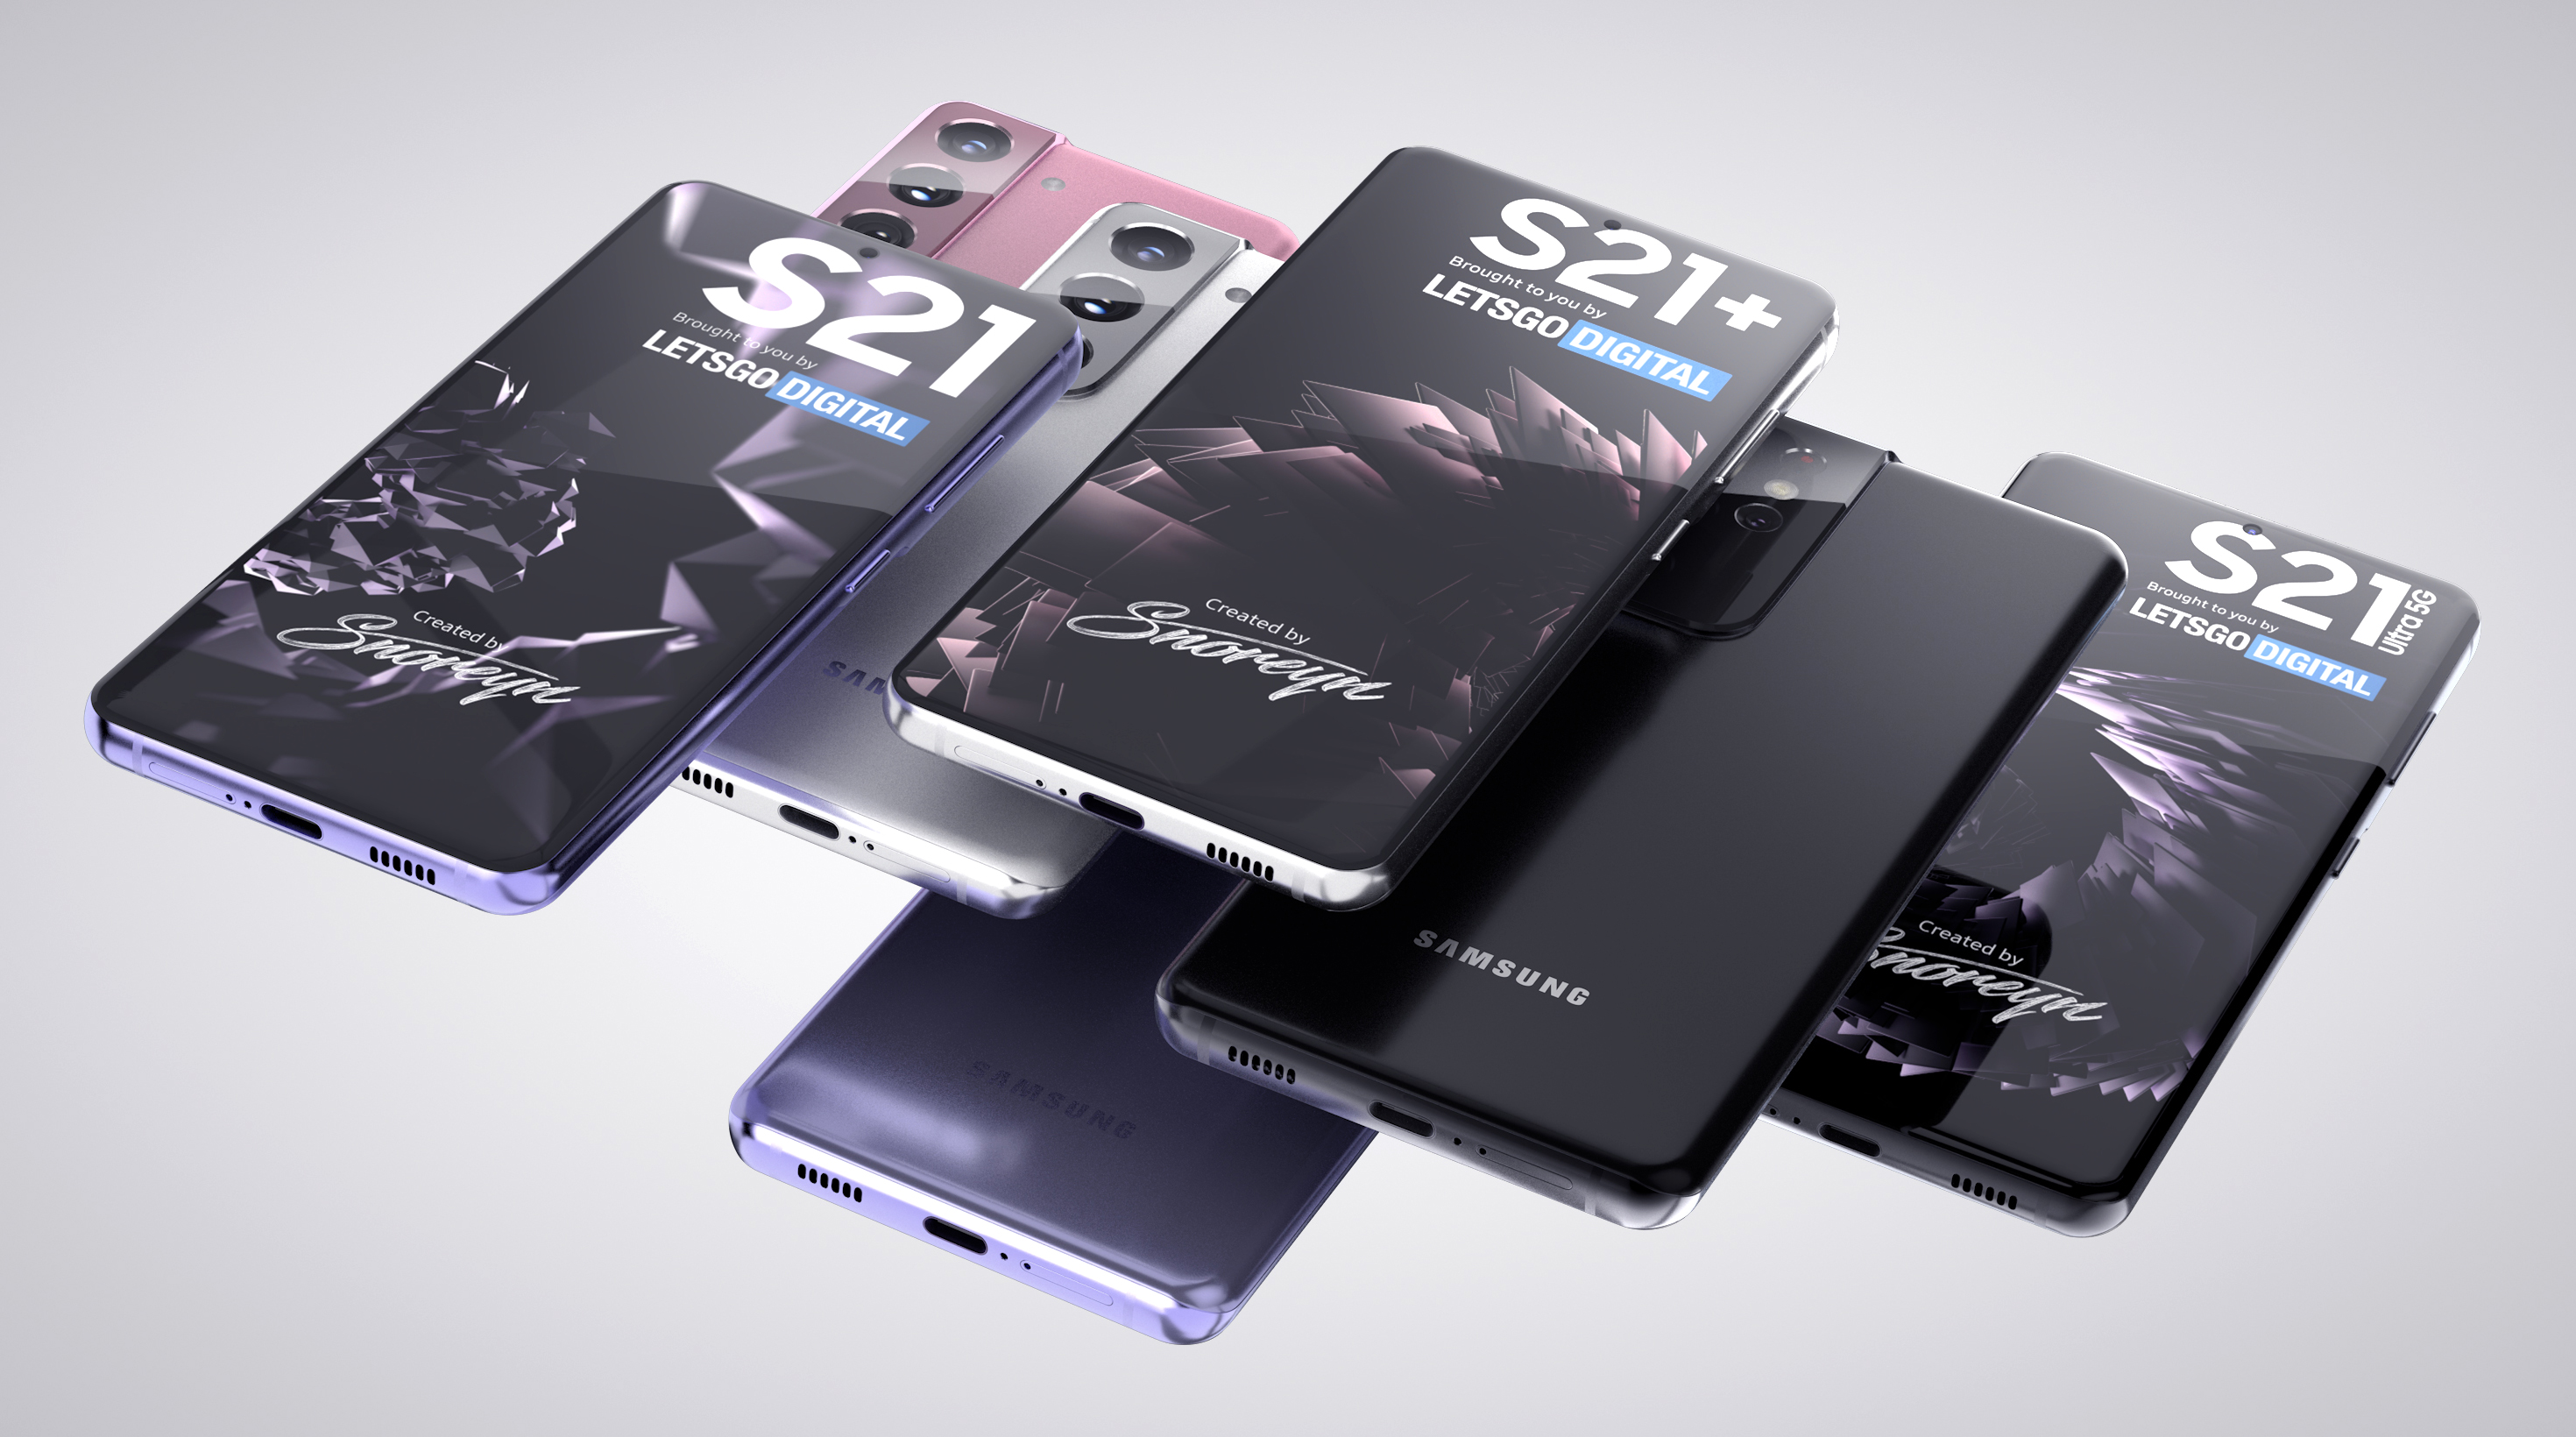 Vorming tweedehands Hij Samsung Galaxy S21 prijs los toestel en geheugen varianten | LetsGoDigital